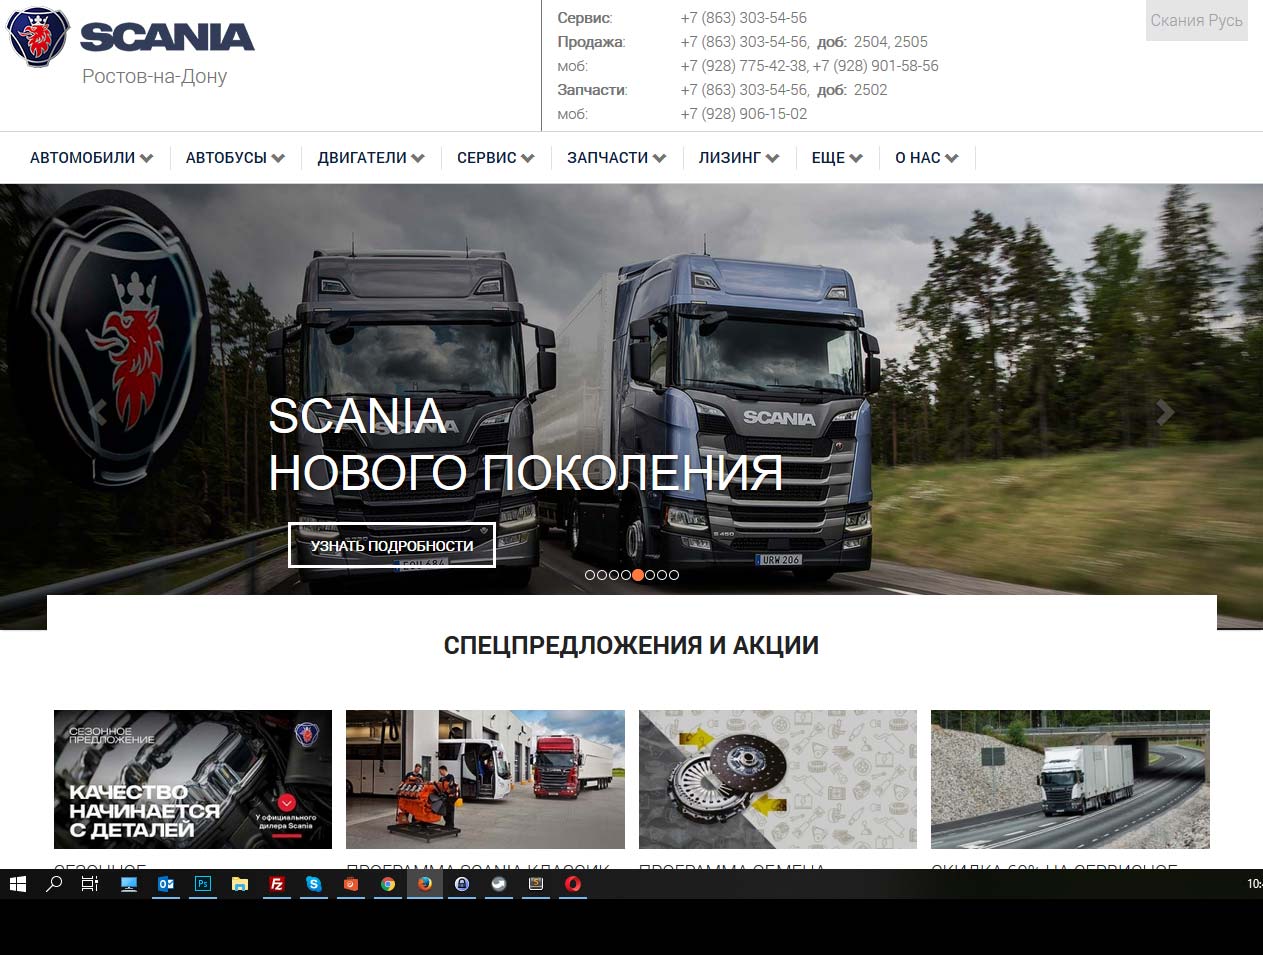 Scania Ростов-на-Дону